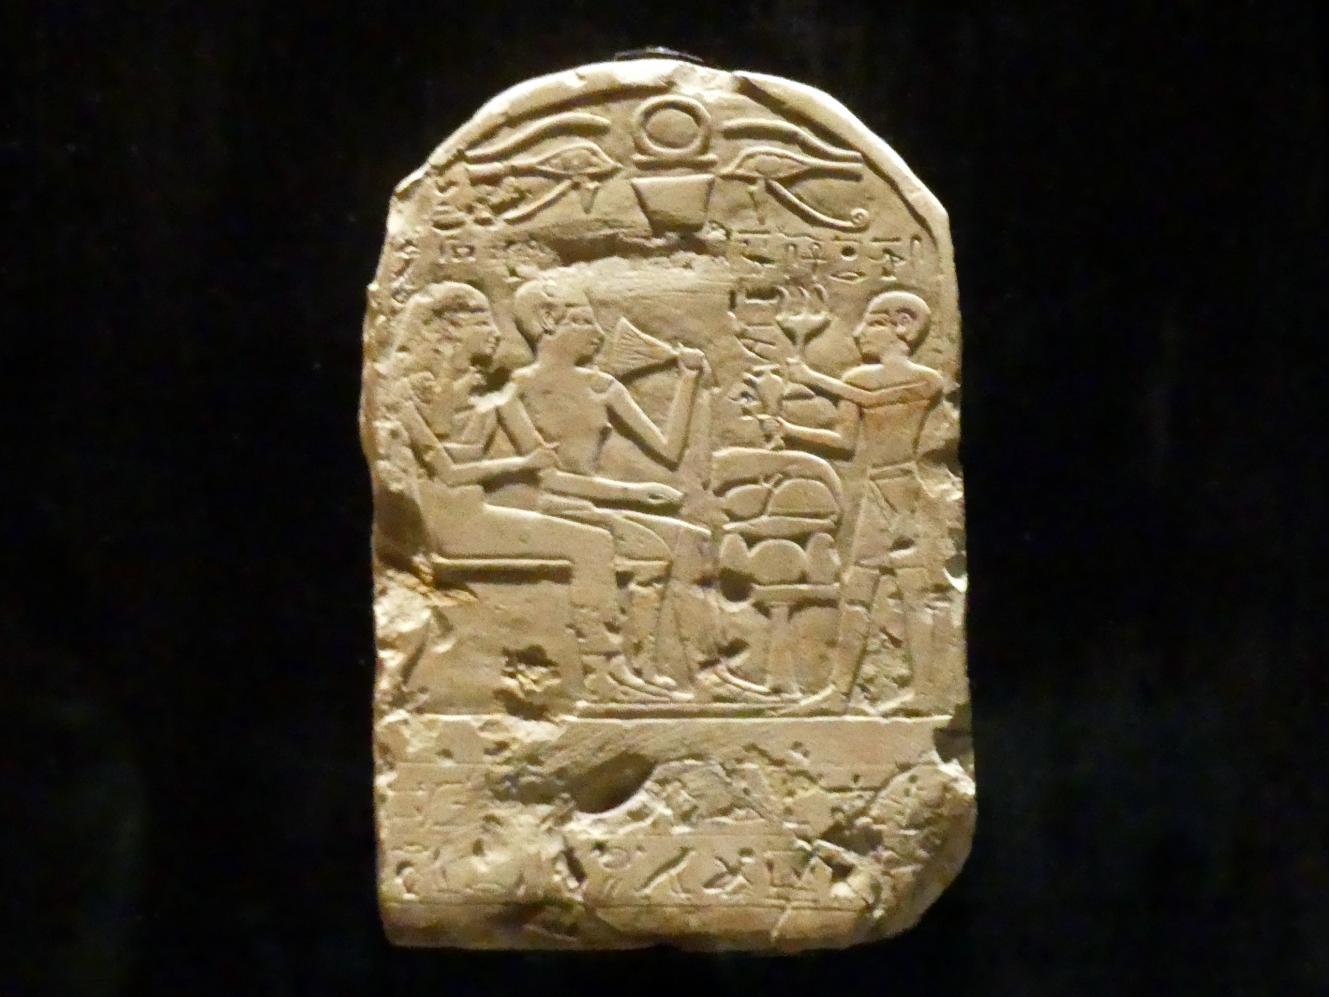 Stele der Tjatja und ihres Mannes, 18. Dynastie, Undatiert, 1600 v. Chr.